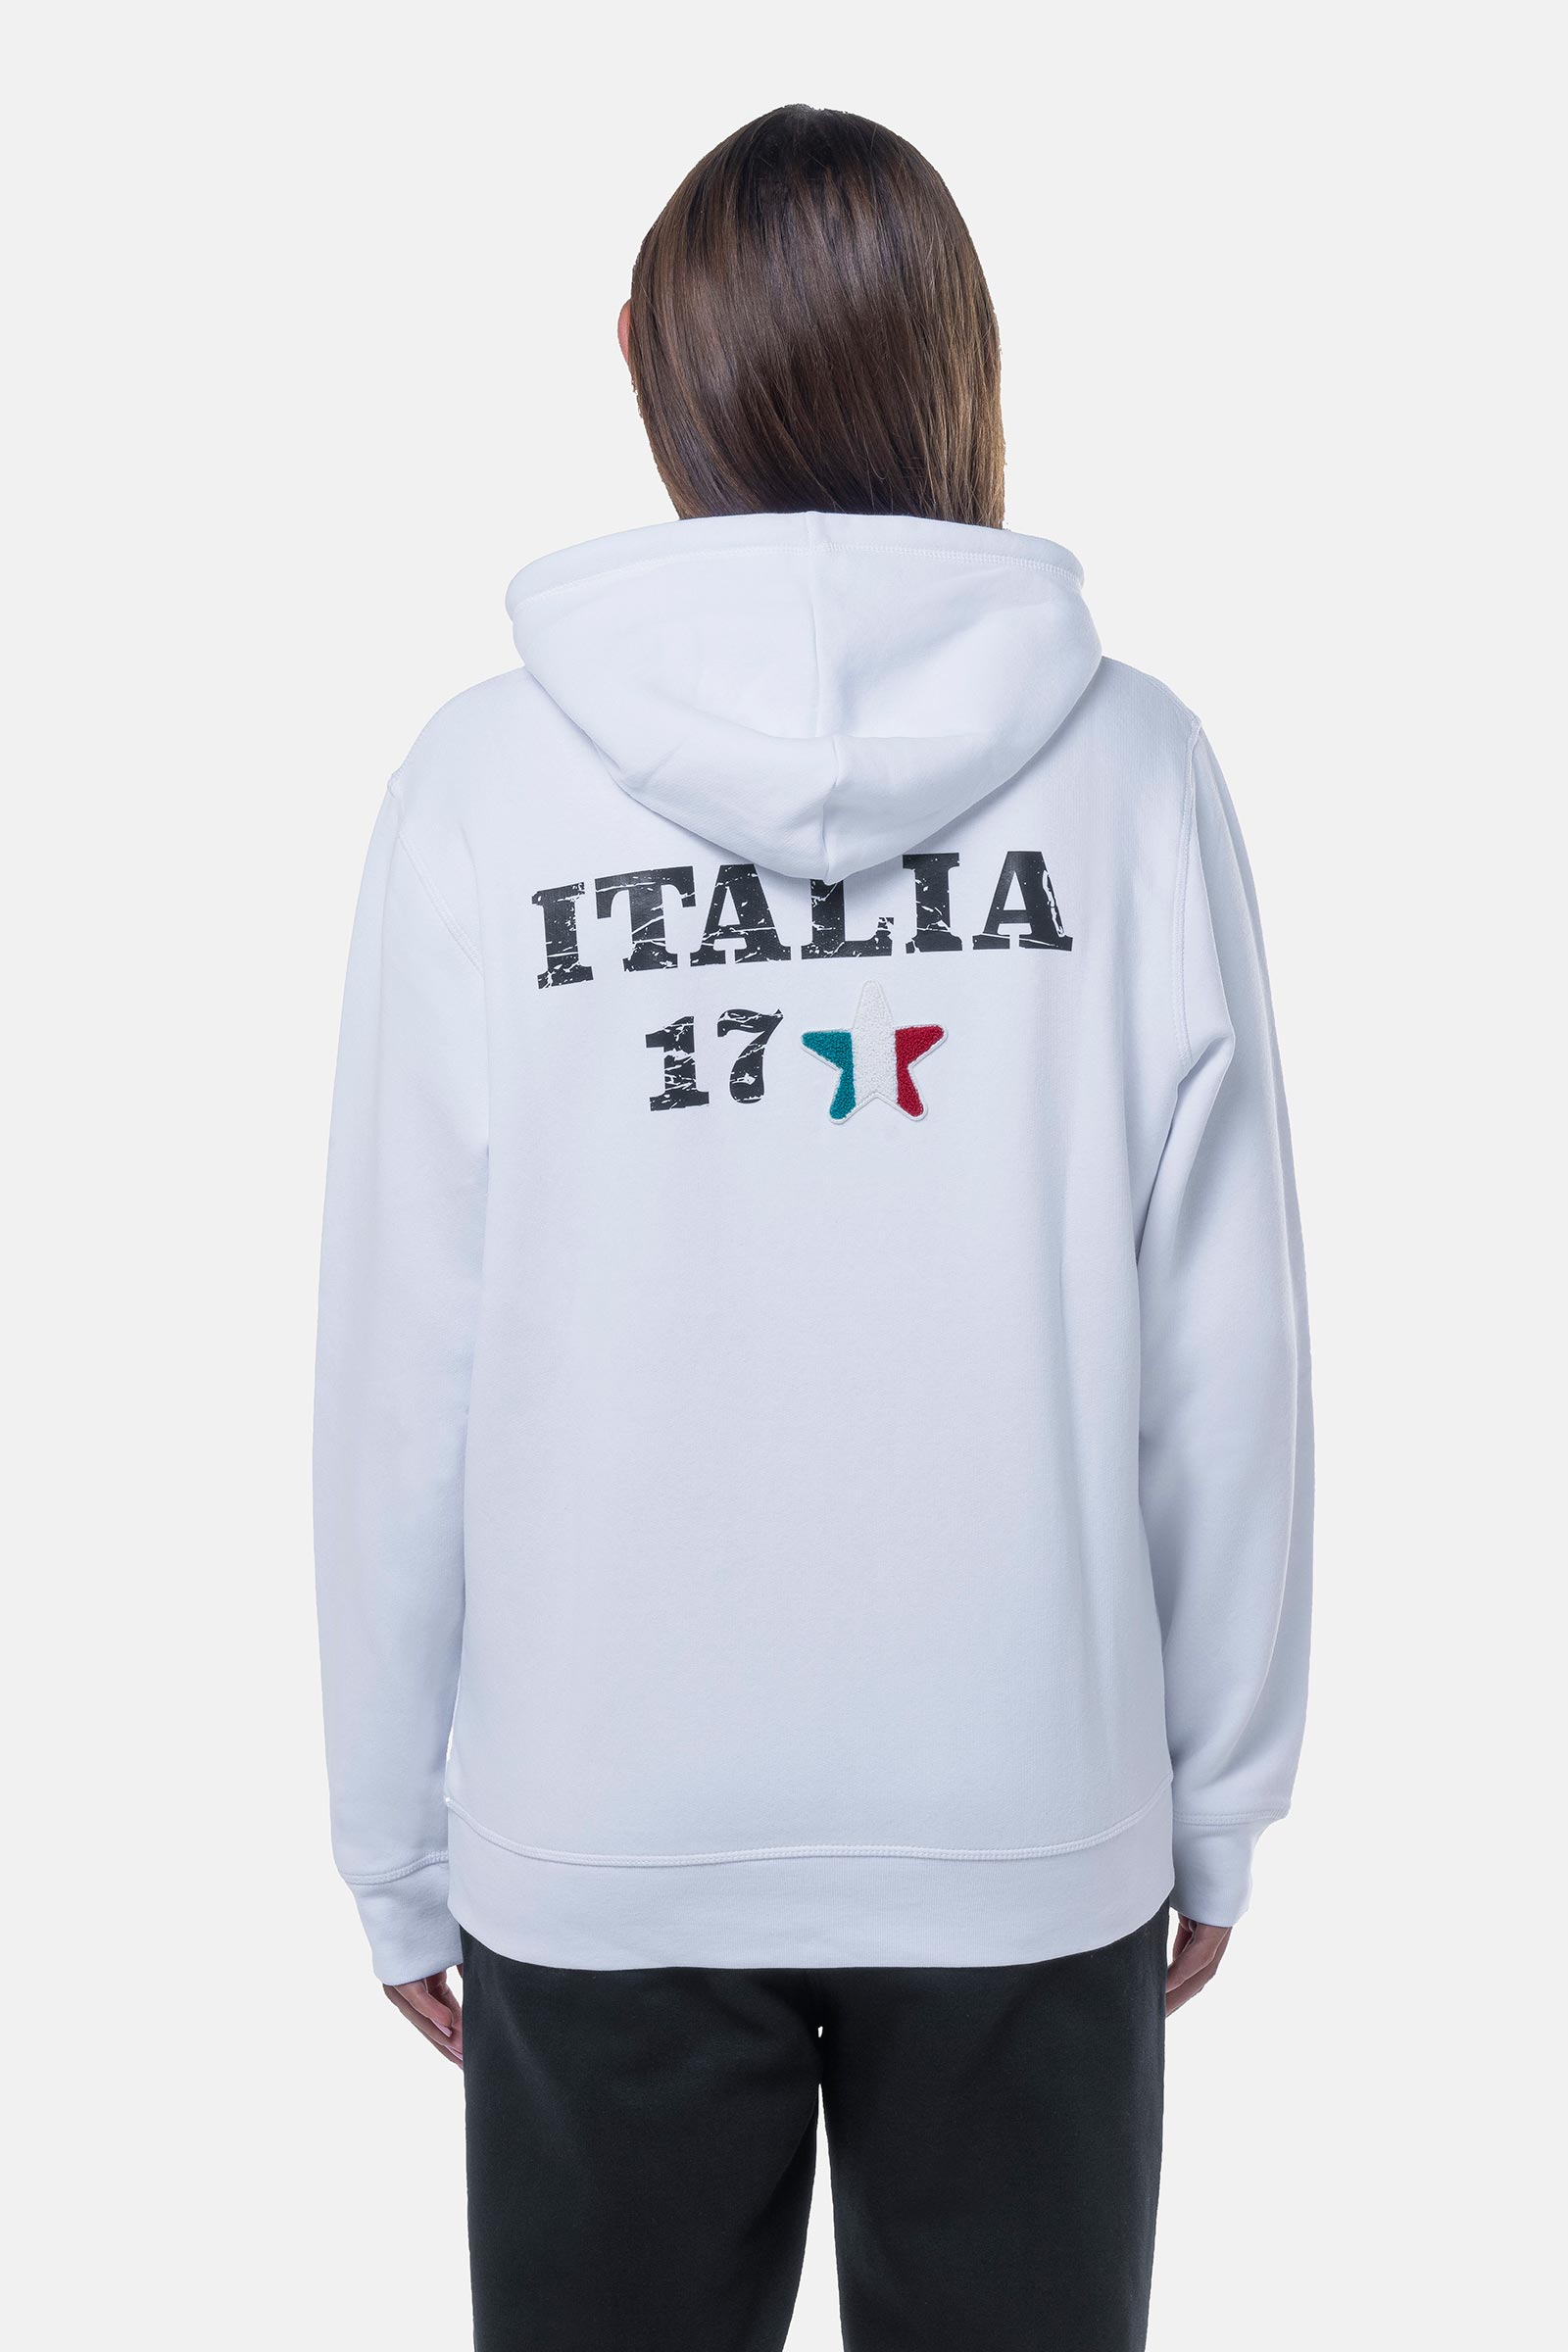 ITALIA 17 HOODIE - WHITE - Hydrogen - Luxury Sportwear